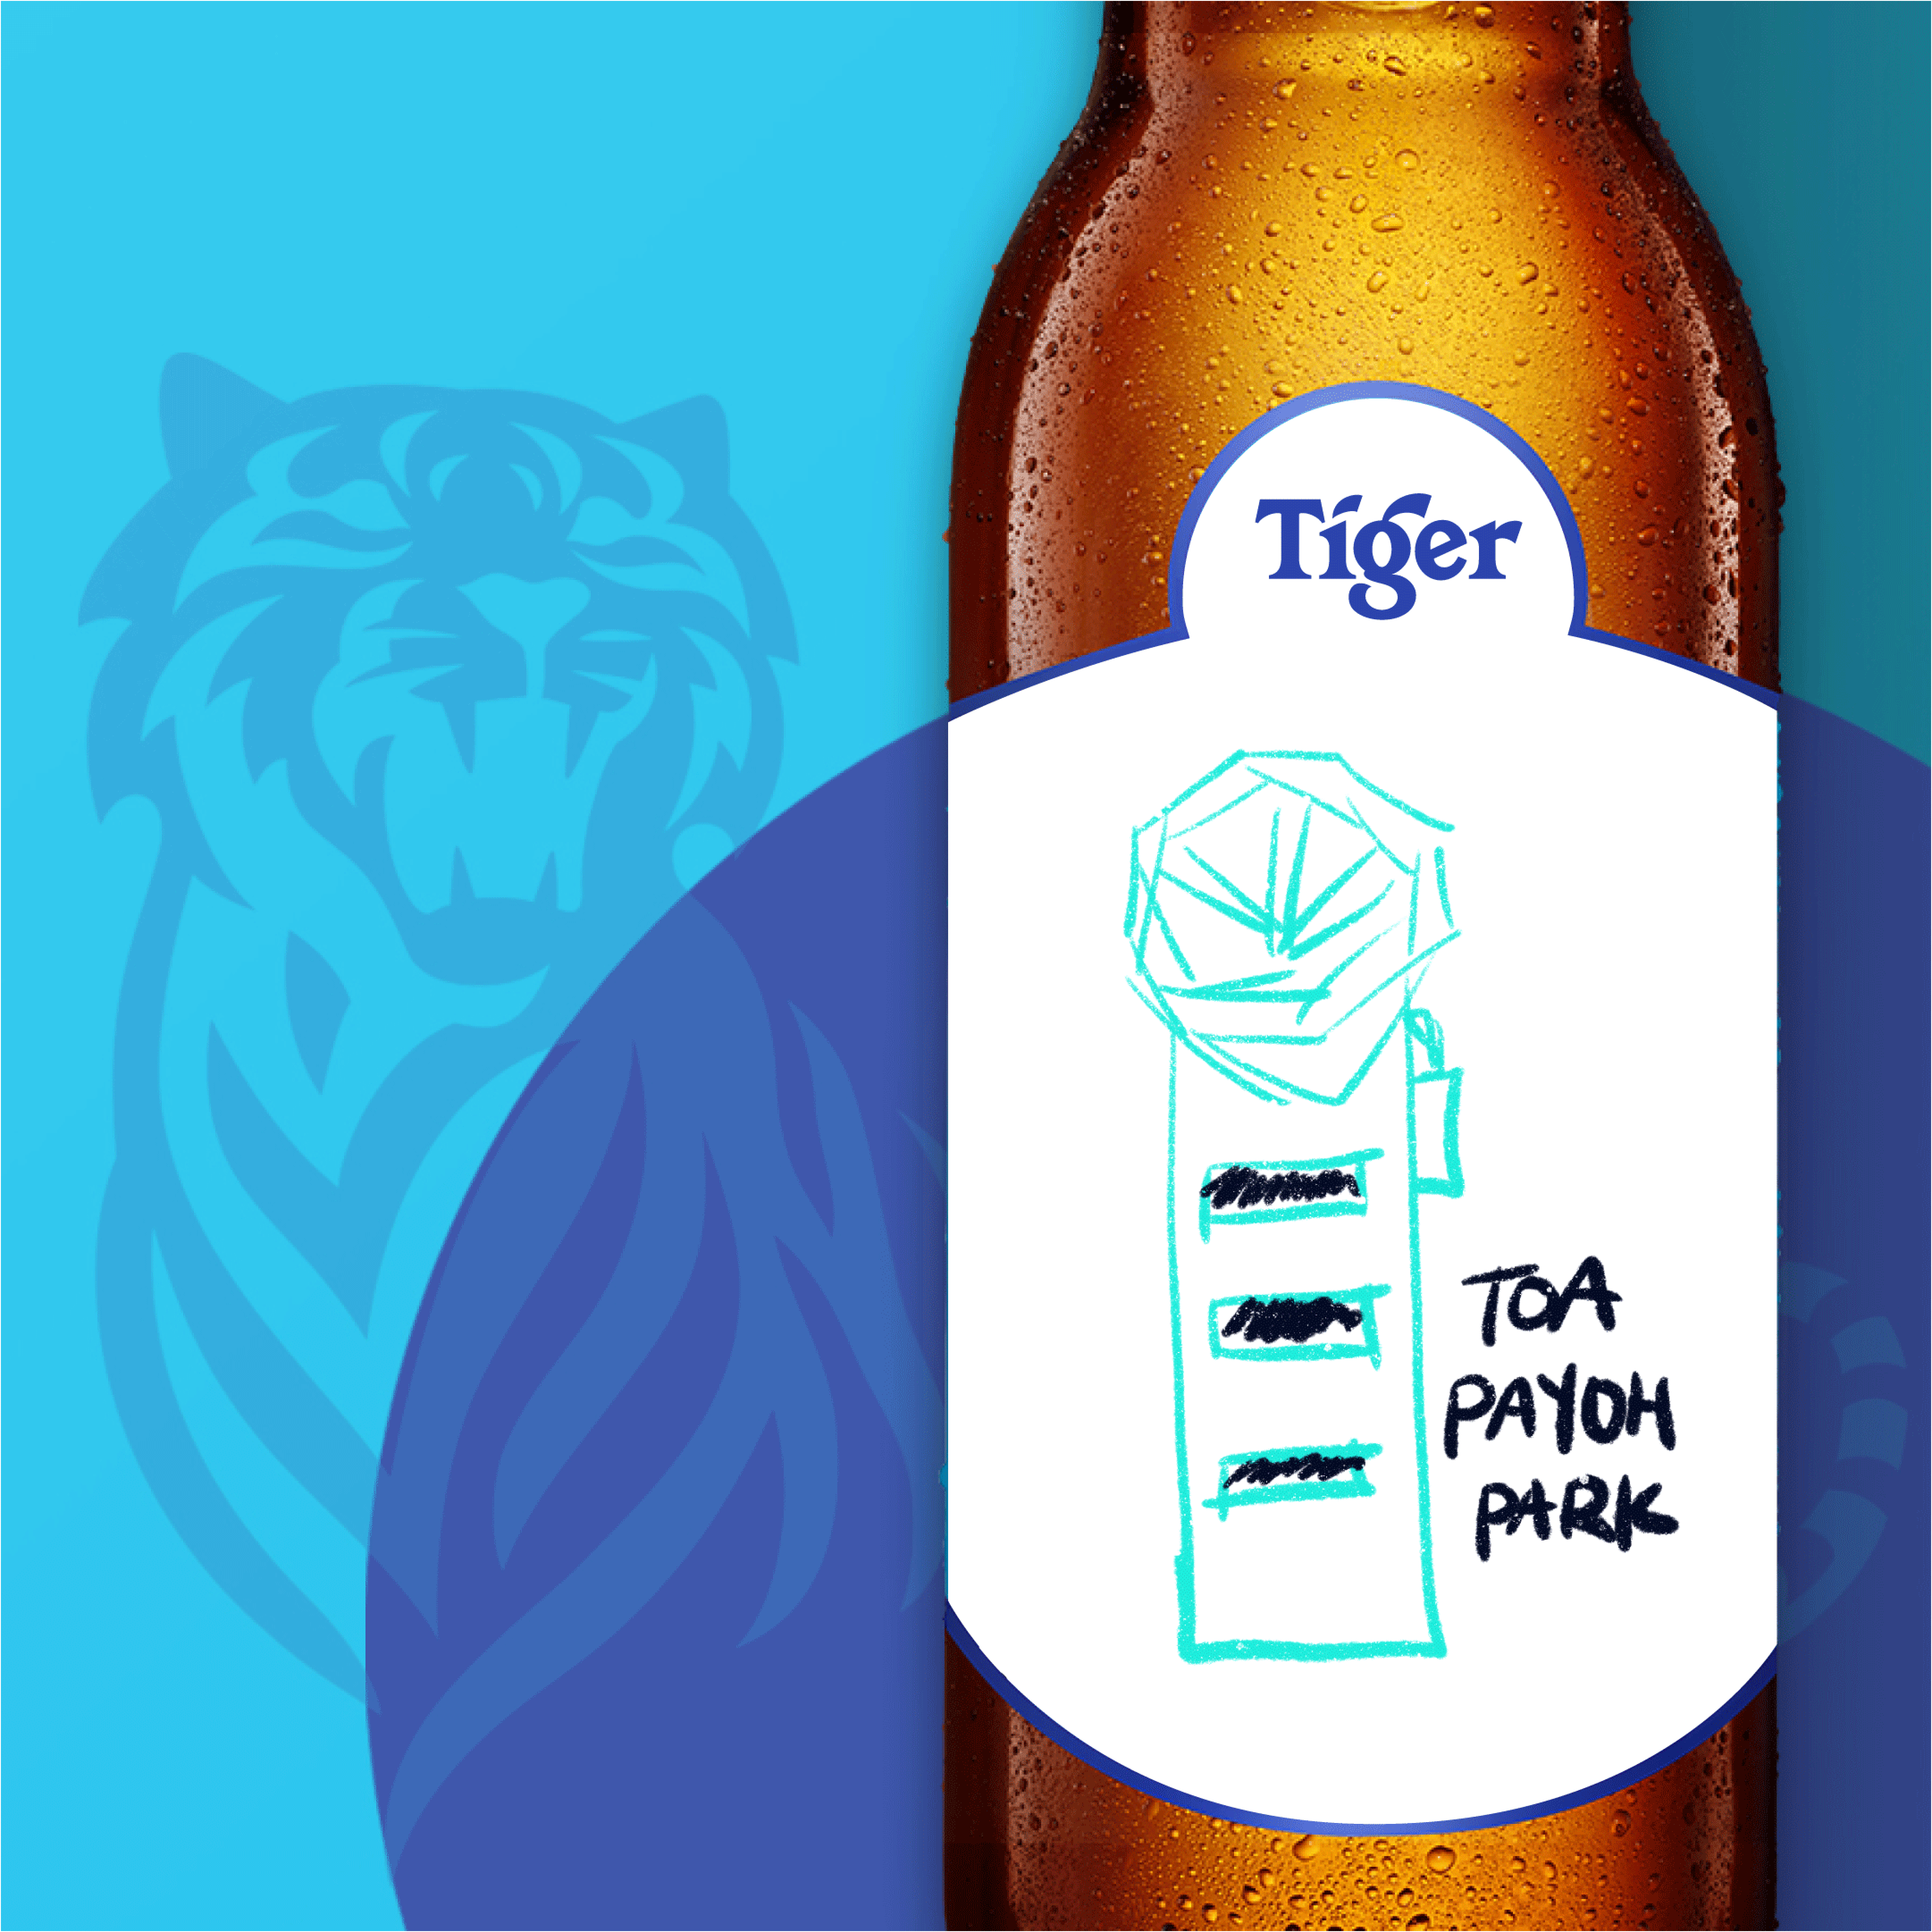 We drew 20 neighbourhoods in S’pore on Tiger beer bottles just for fun ...